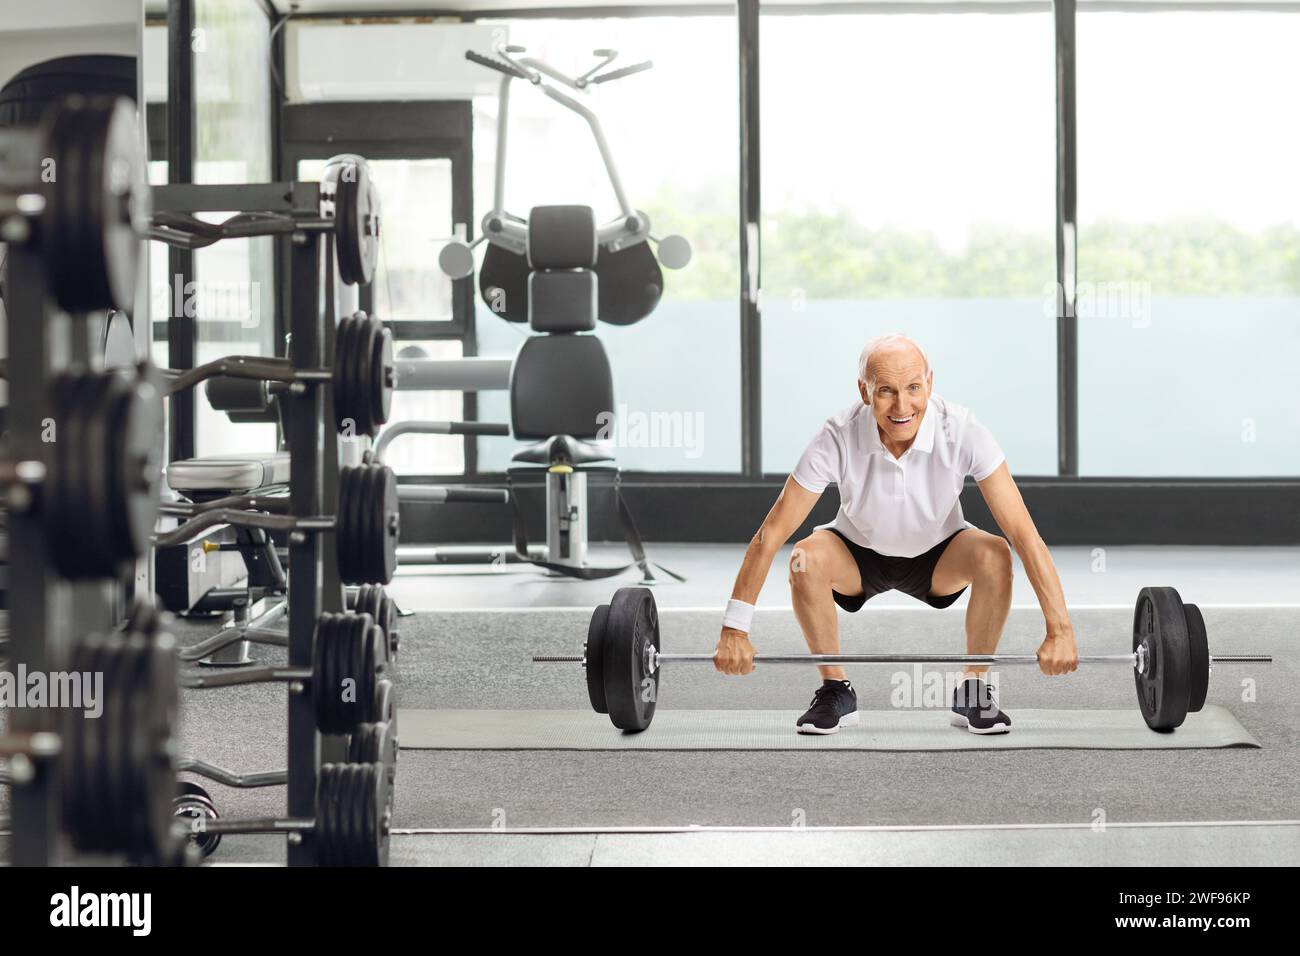 Senior man lifting a barbell at a gym Stock Photo